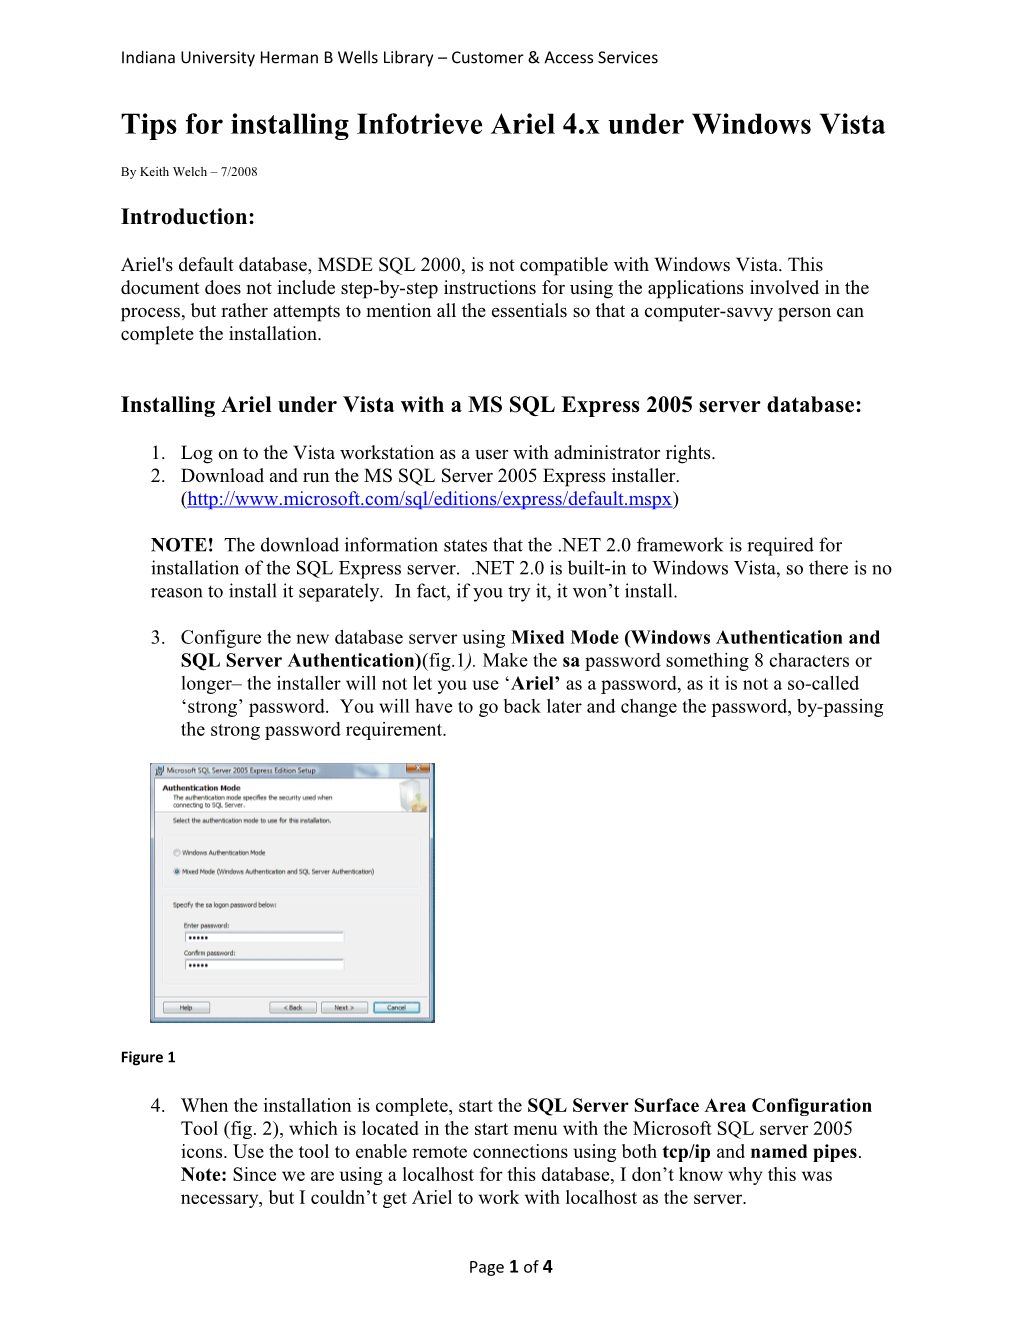 Tips for Installing Infotrieve Ariel 4.X Under Windows Vista